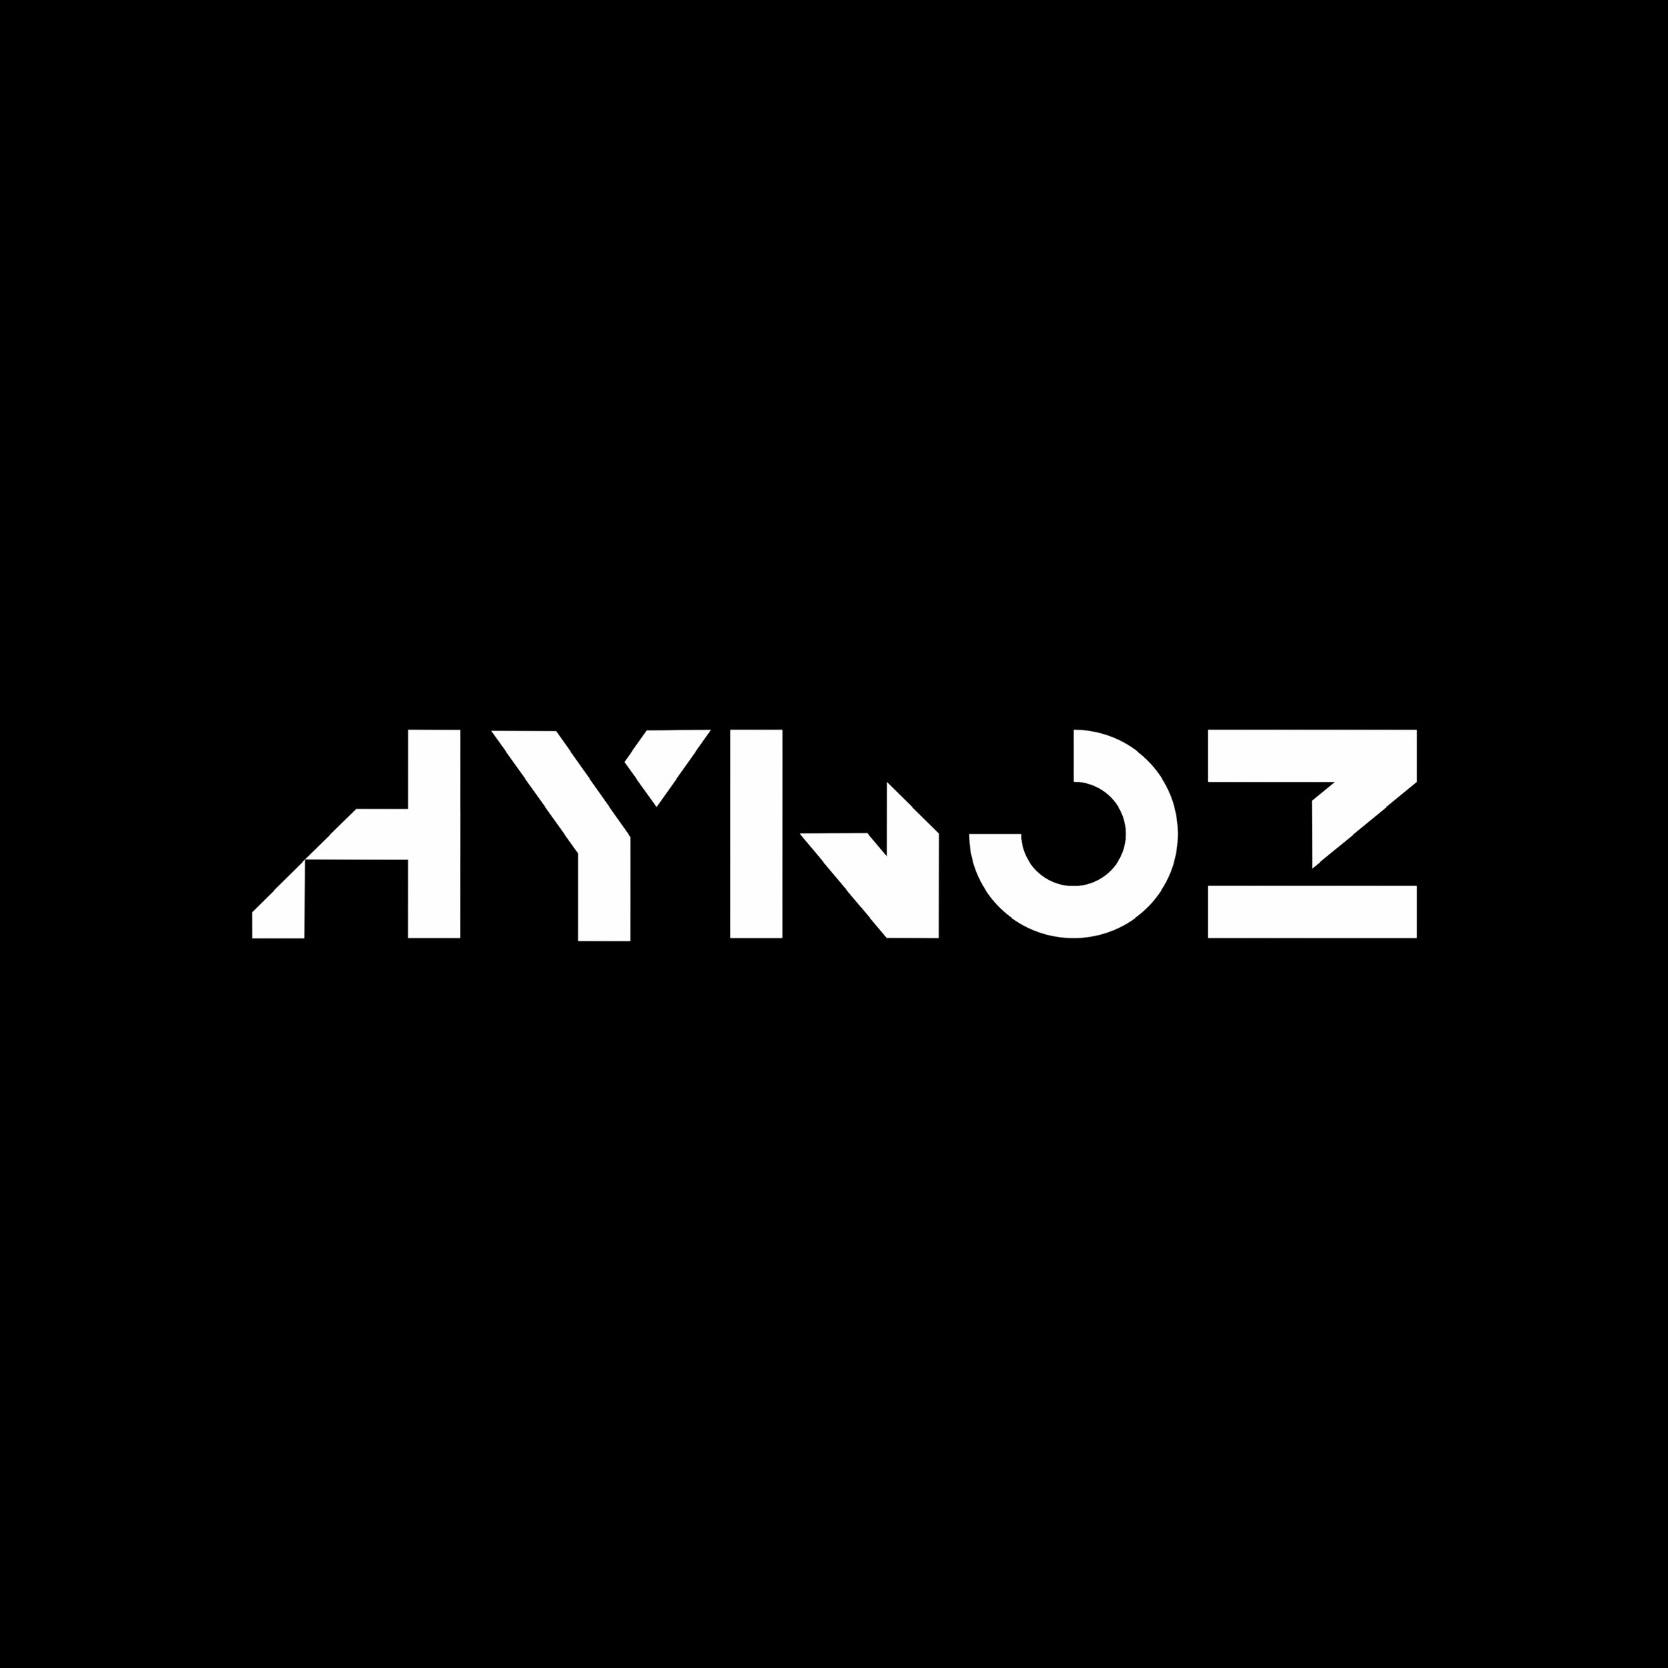 HynoZ